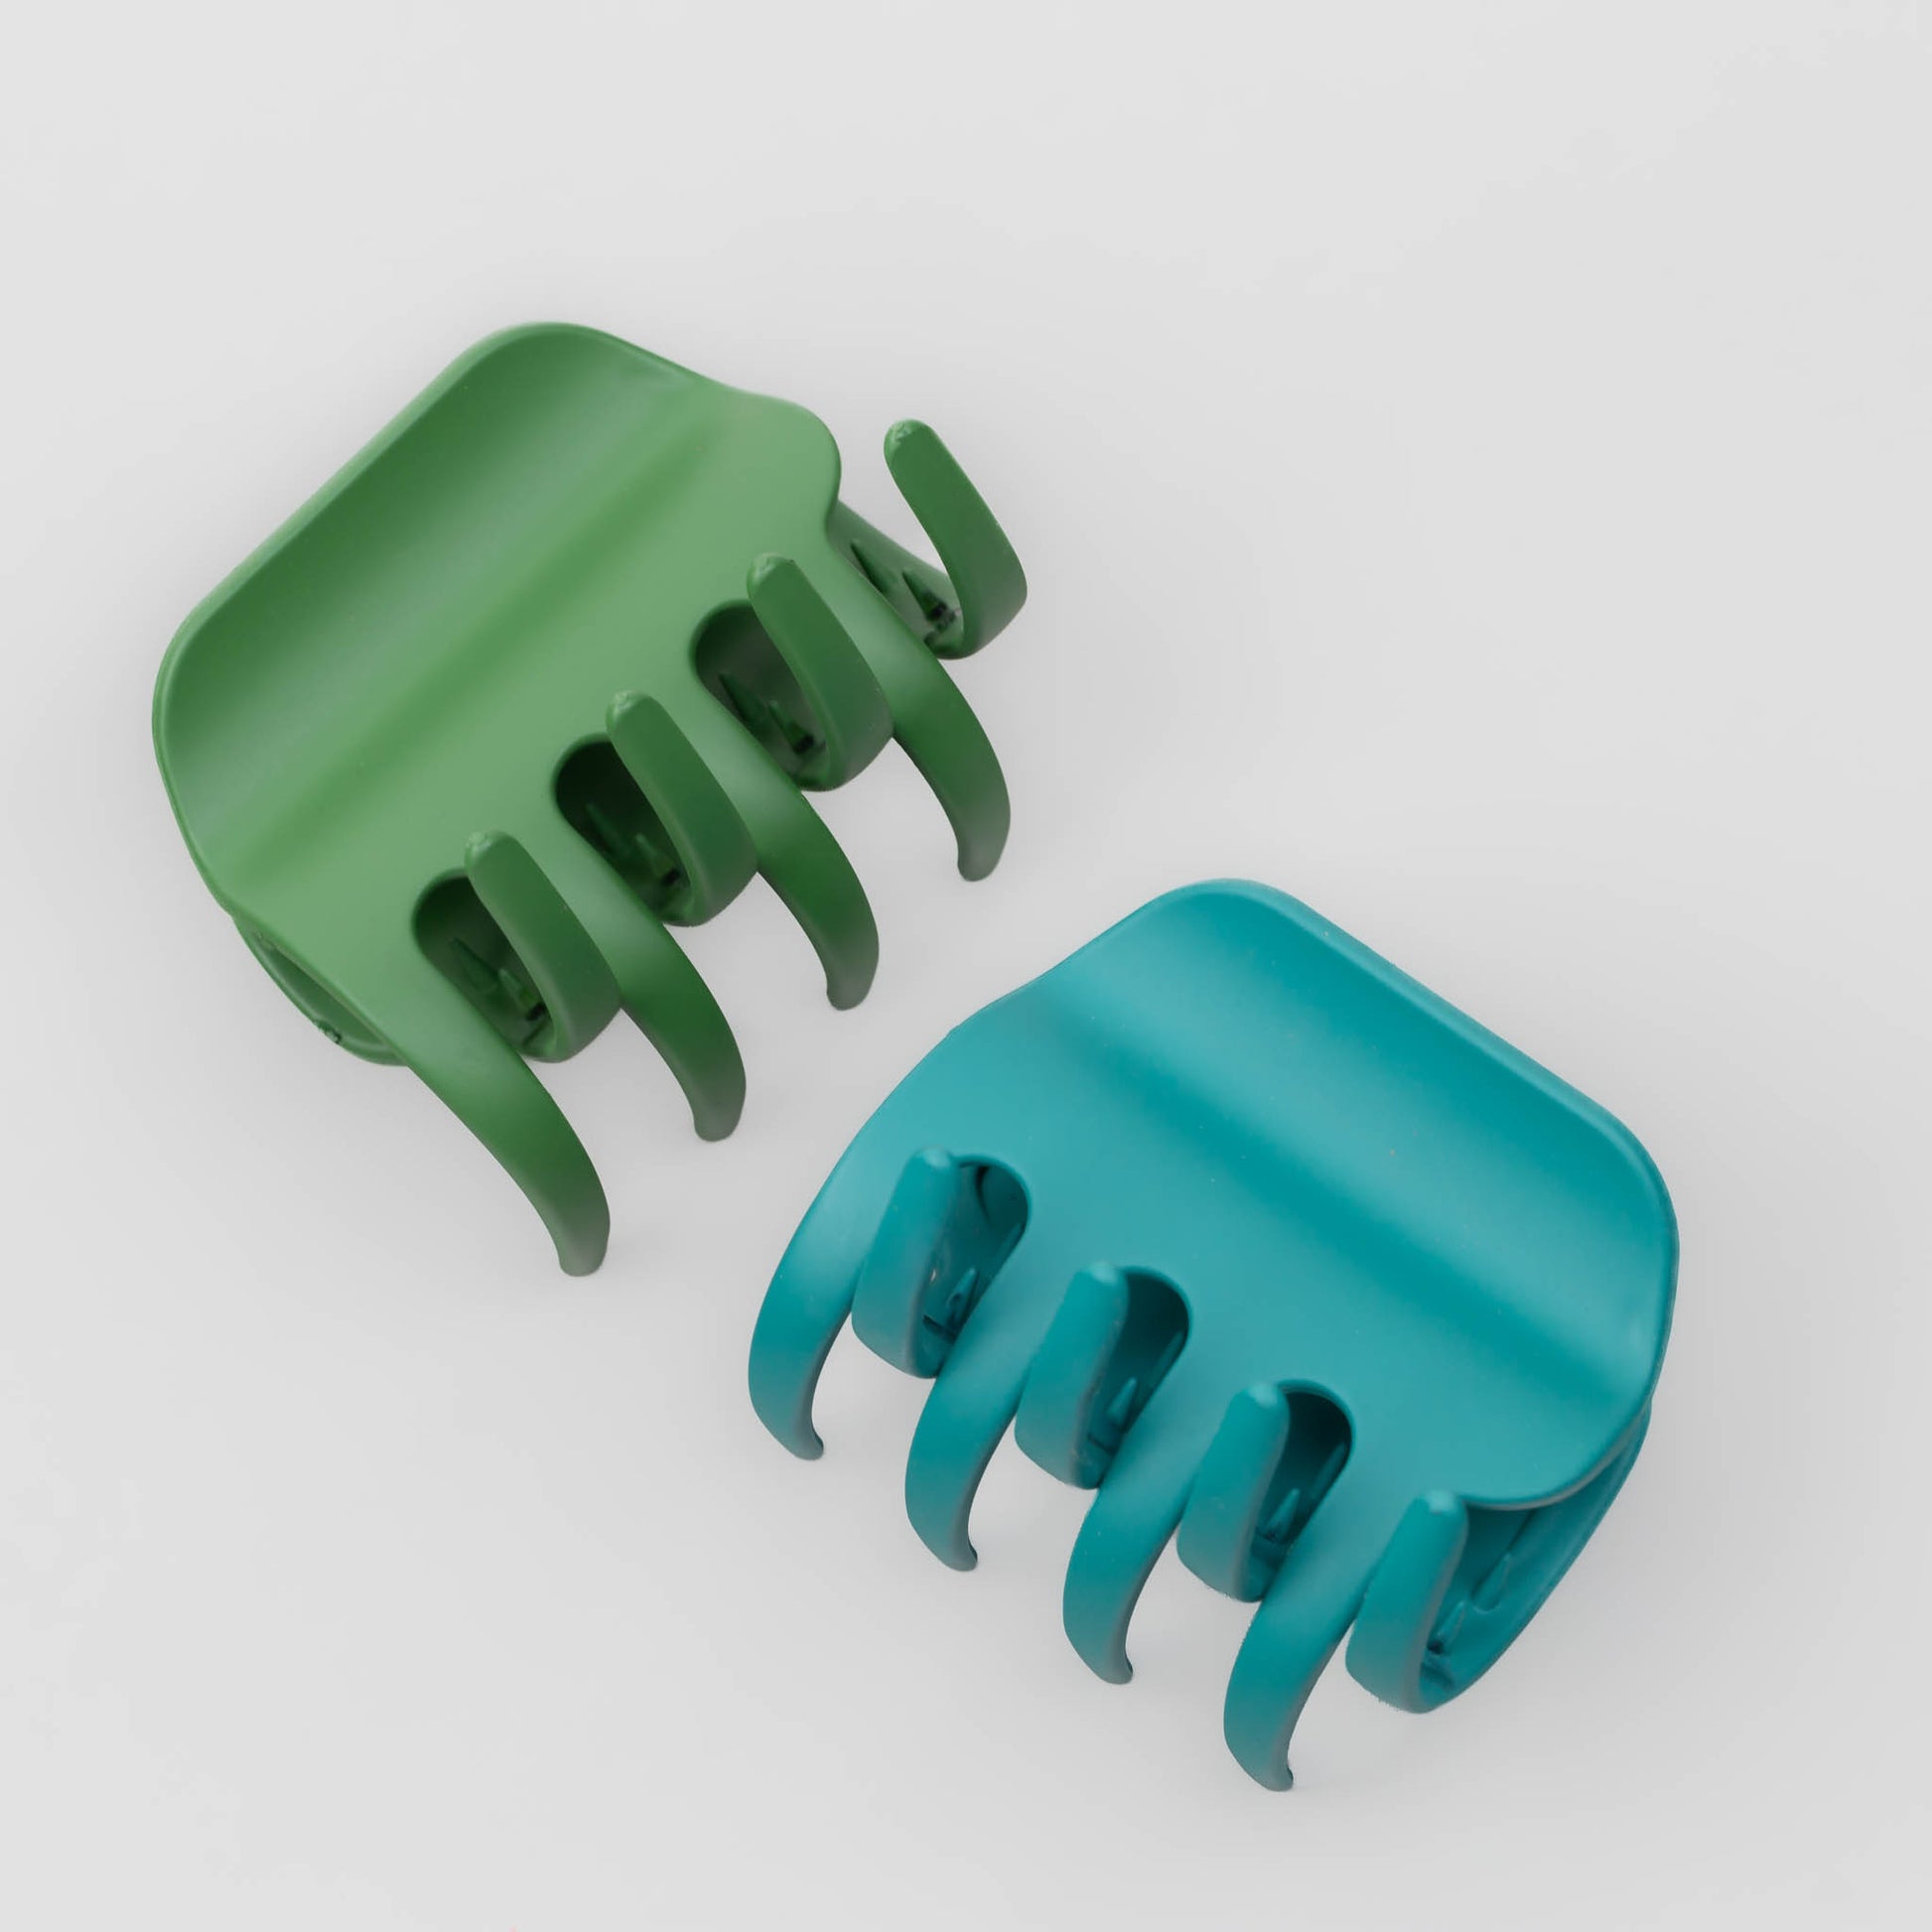 Clame de păr medii cu prindere largă și textură mată de silicon, set 2 buc - Verde Mix